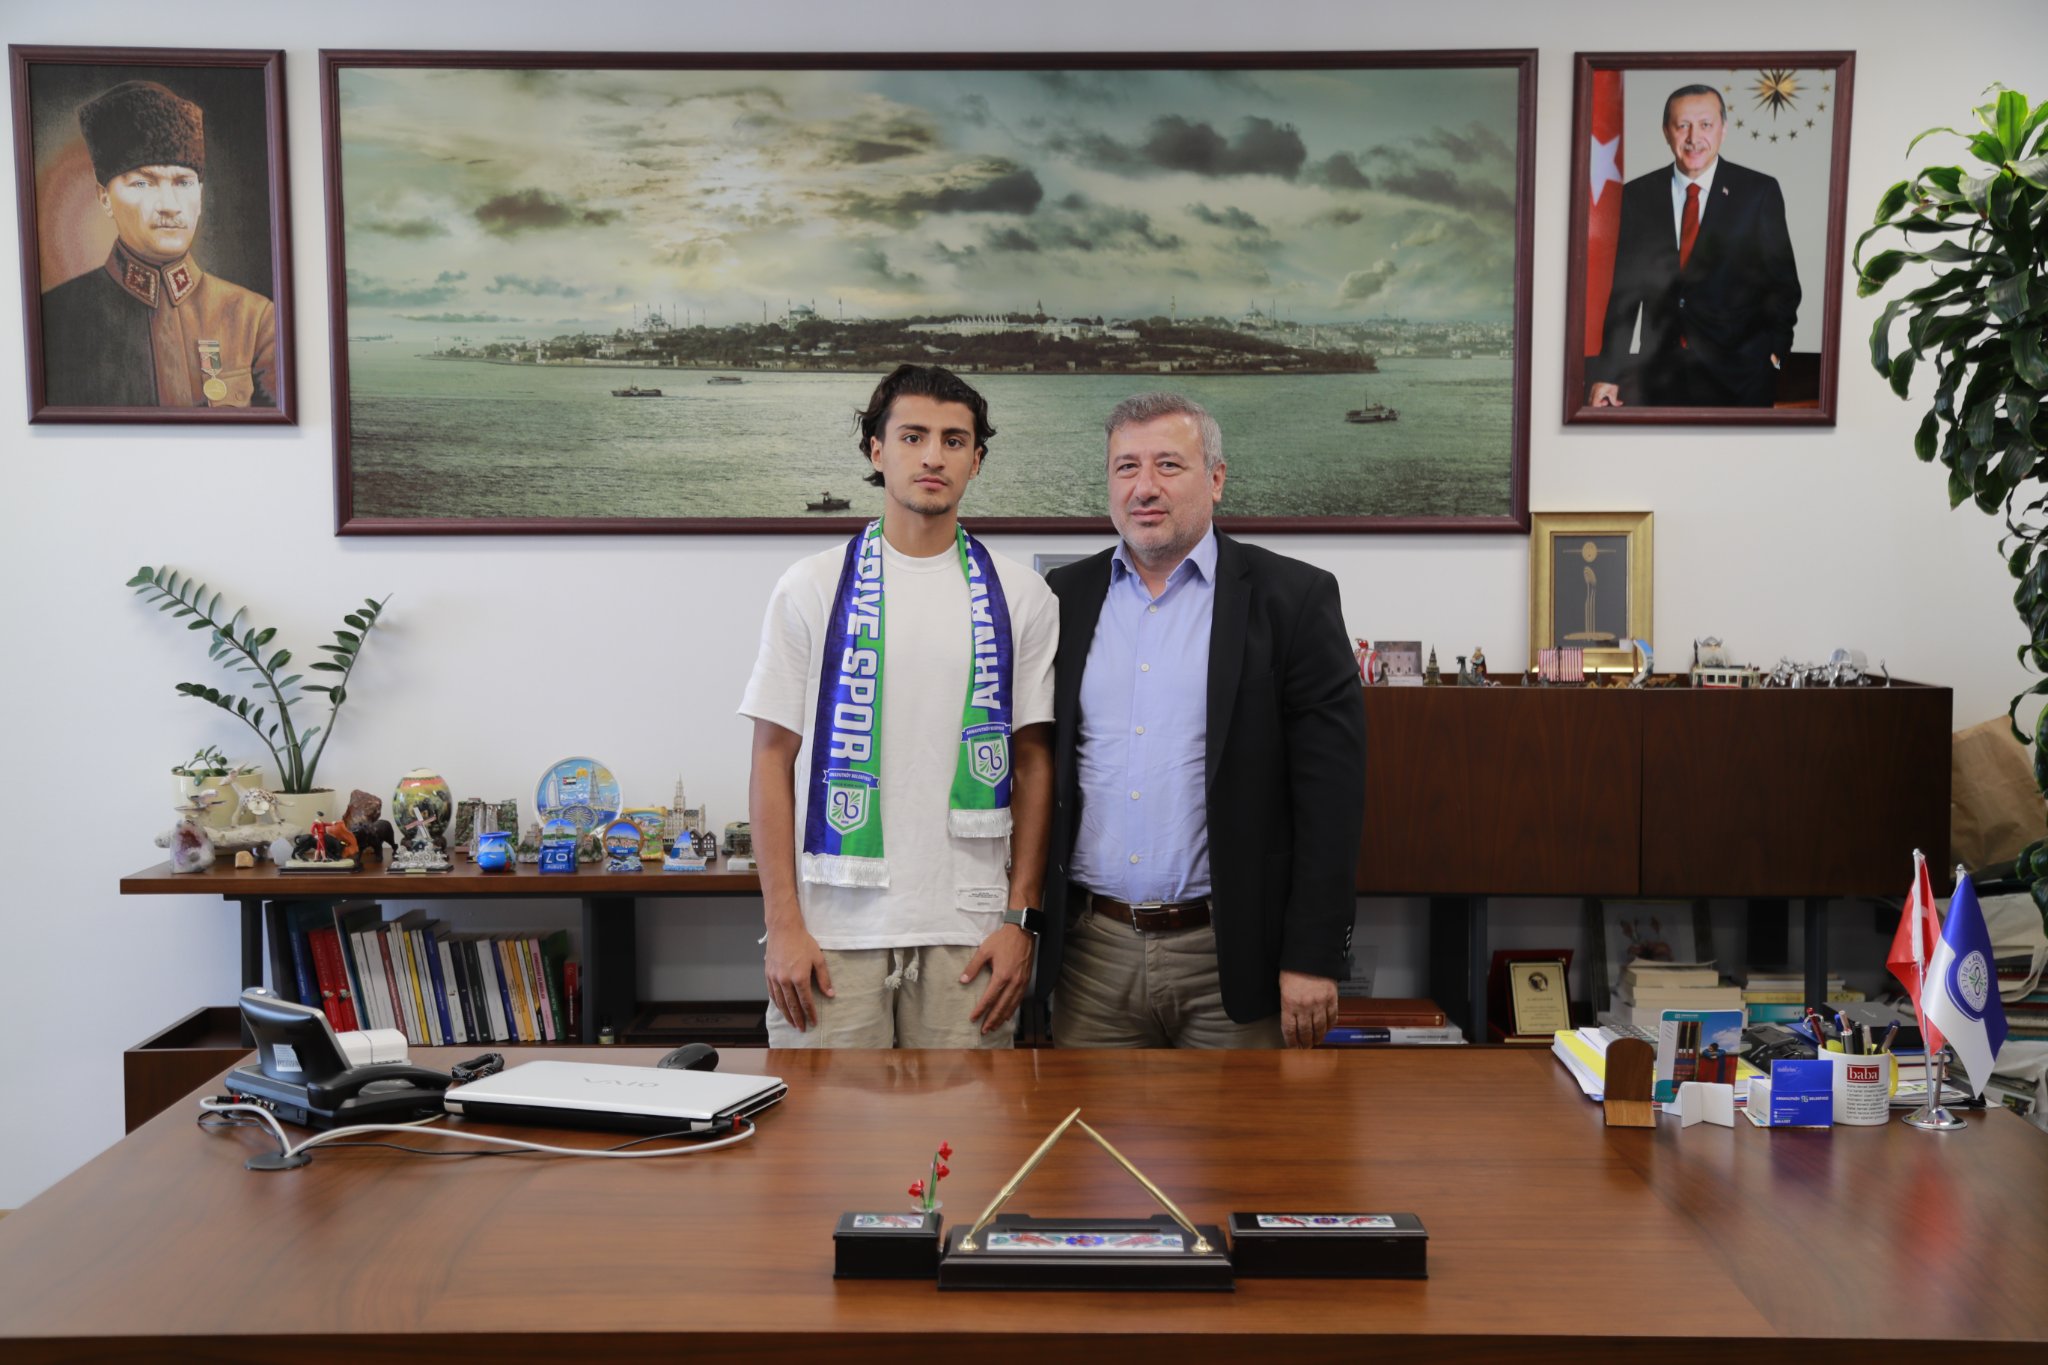 Yusuf Ensar Poyrazlı Arnavutköy Belediye Spor'da